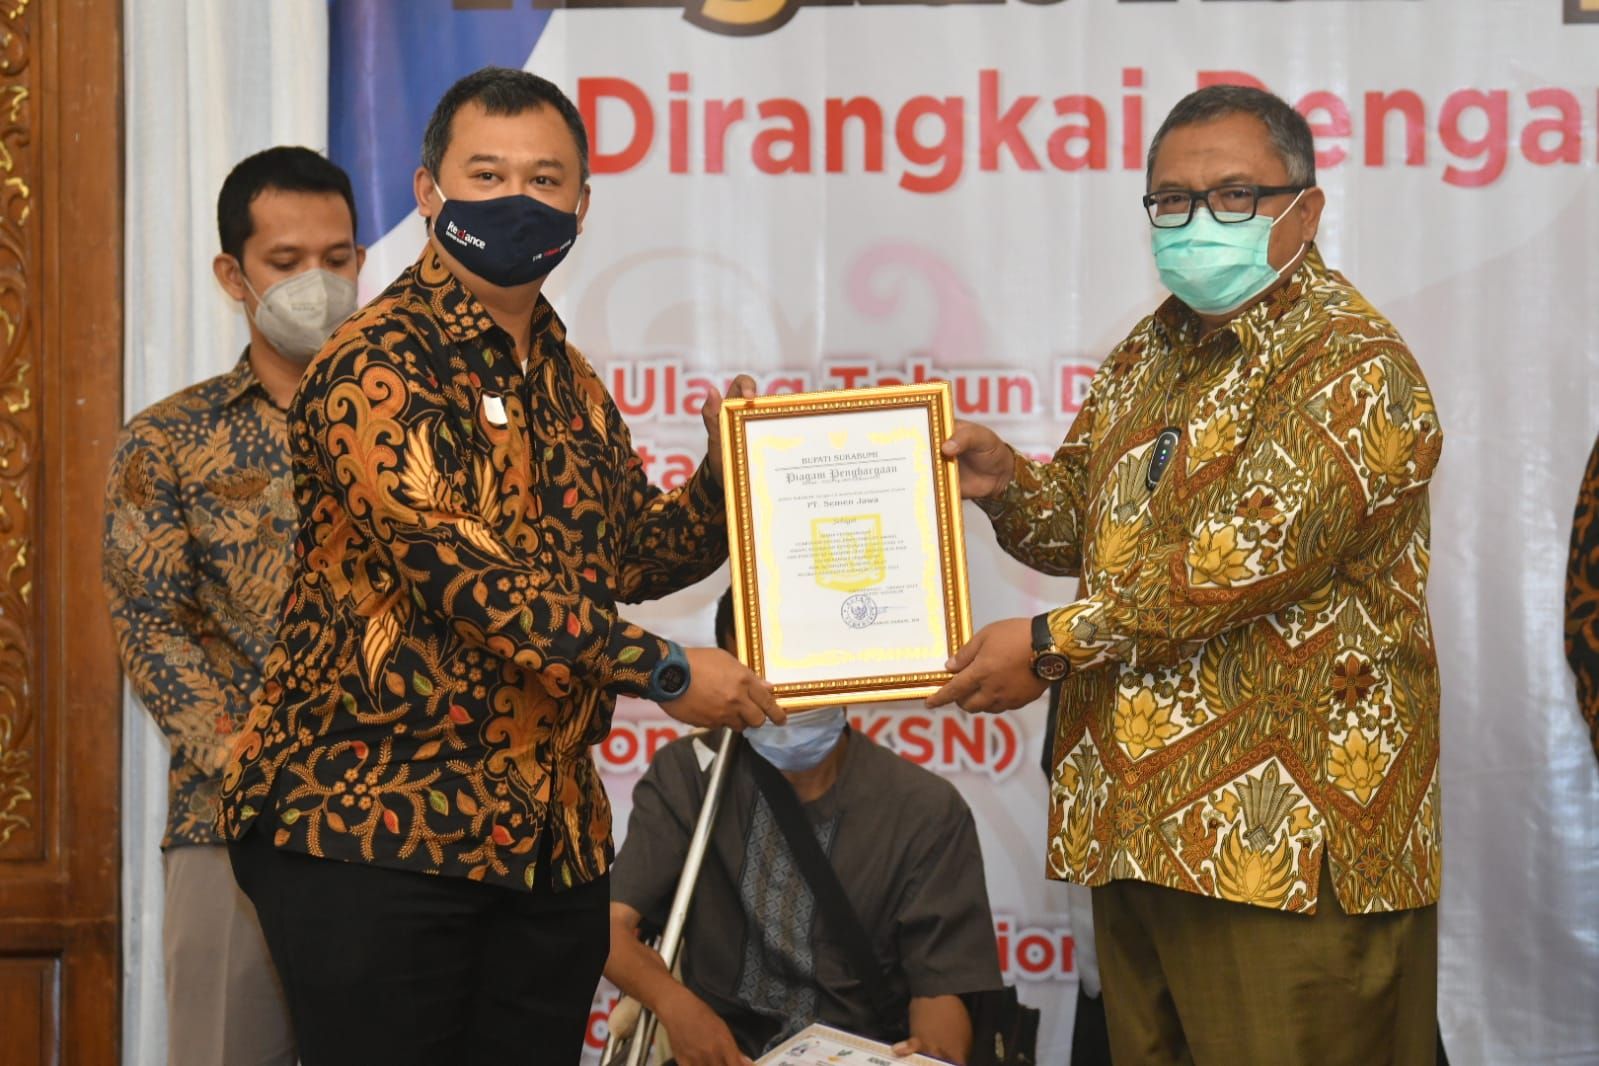 Penghargaan diberikan oleh H. Marwan Hamami, MM selaku Bupati Sukabumi pada peringatan Hari Ibu, Rabu (22/12), di Hotel Pangrango Kabupaten Sukabumi.